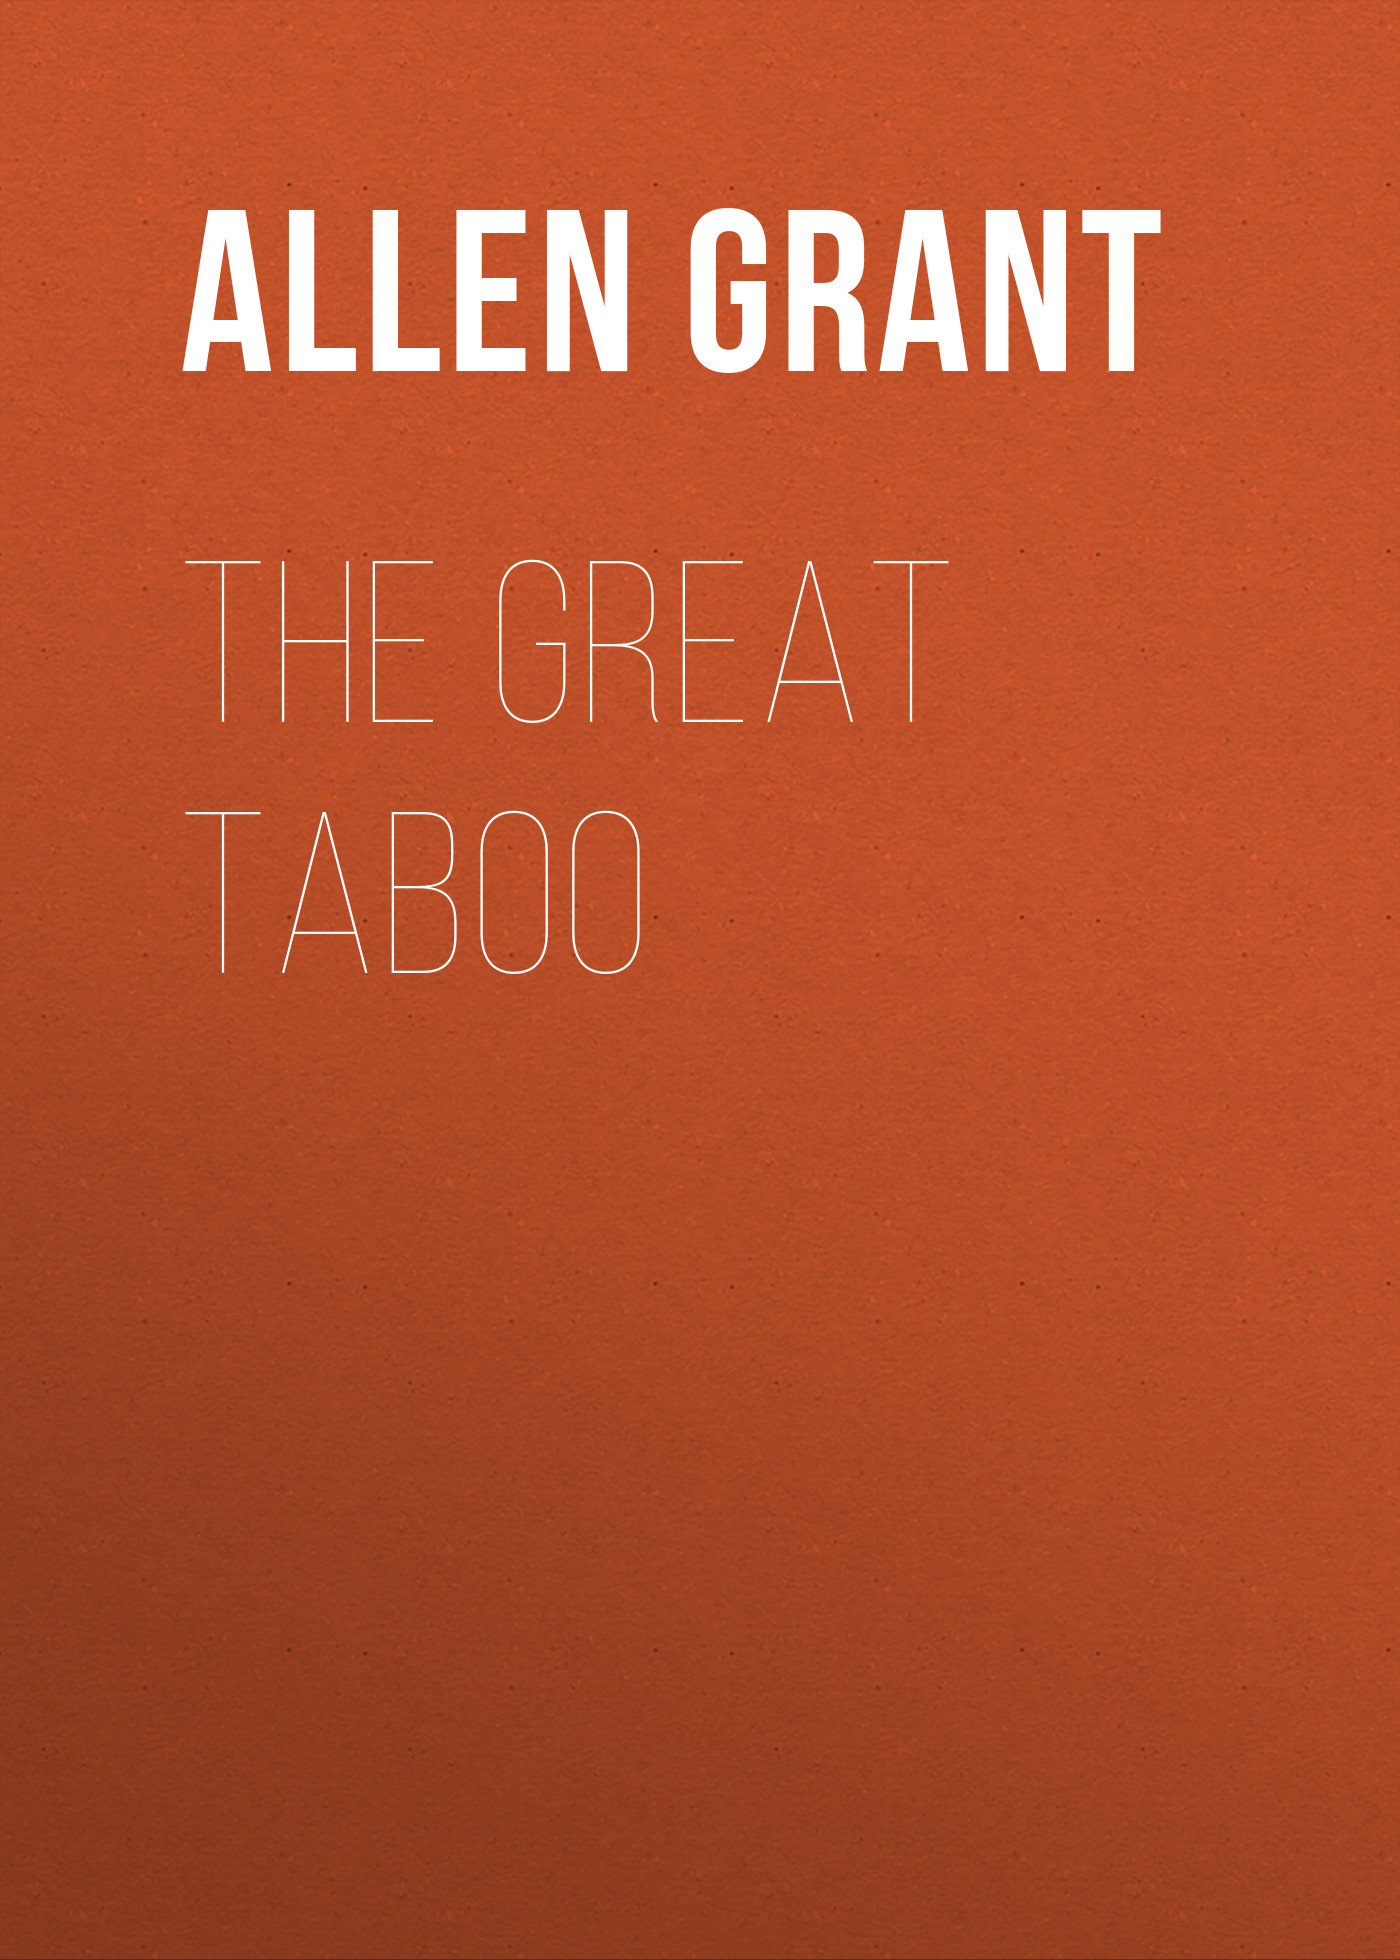 Книга The Great Taboo из серии , созданная Grant Allen, может относится к жанру Зарубежная классика, Литература 19 века, Зарубежная старинная литература. Стоимость электронной книги The Great Taboo с идентификатором 36364886 составляет 0 руб.